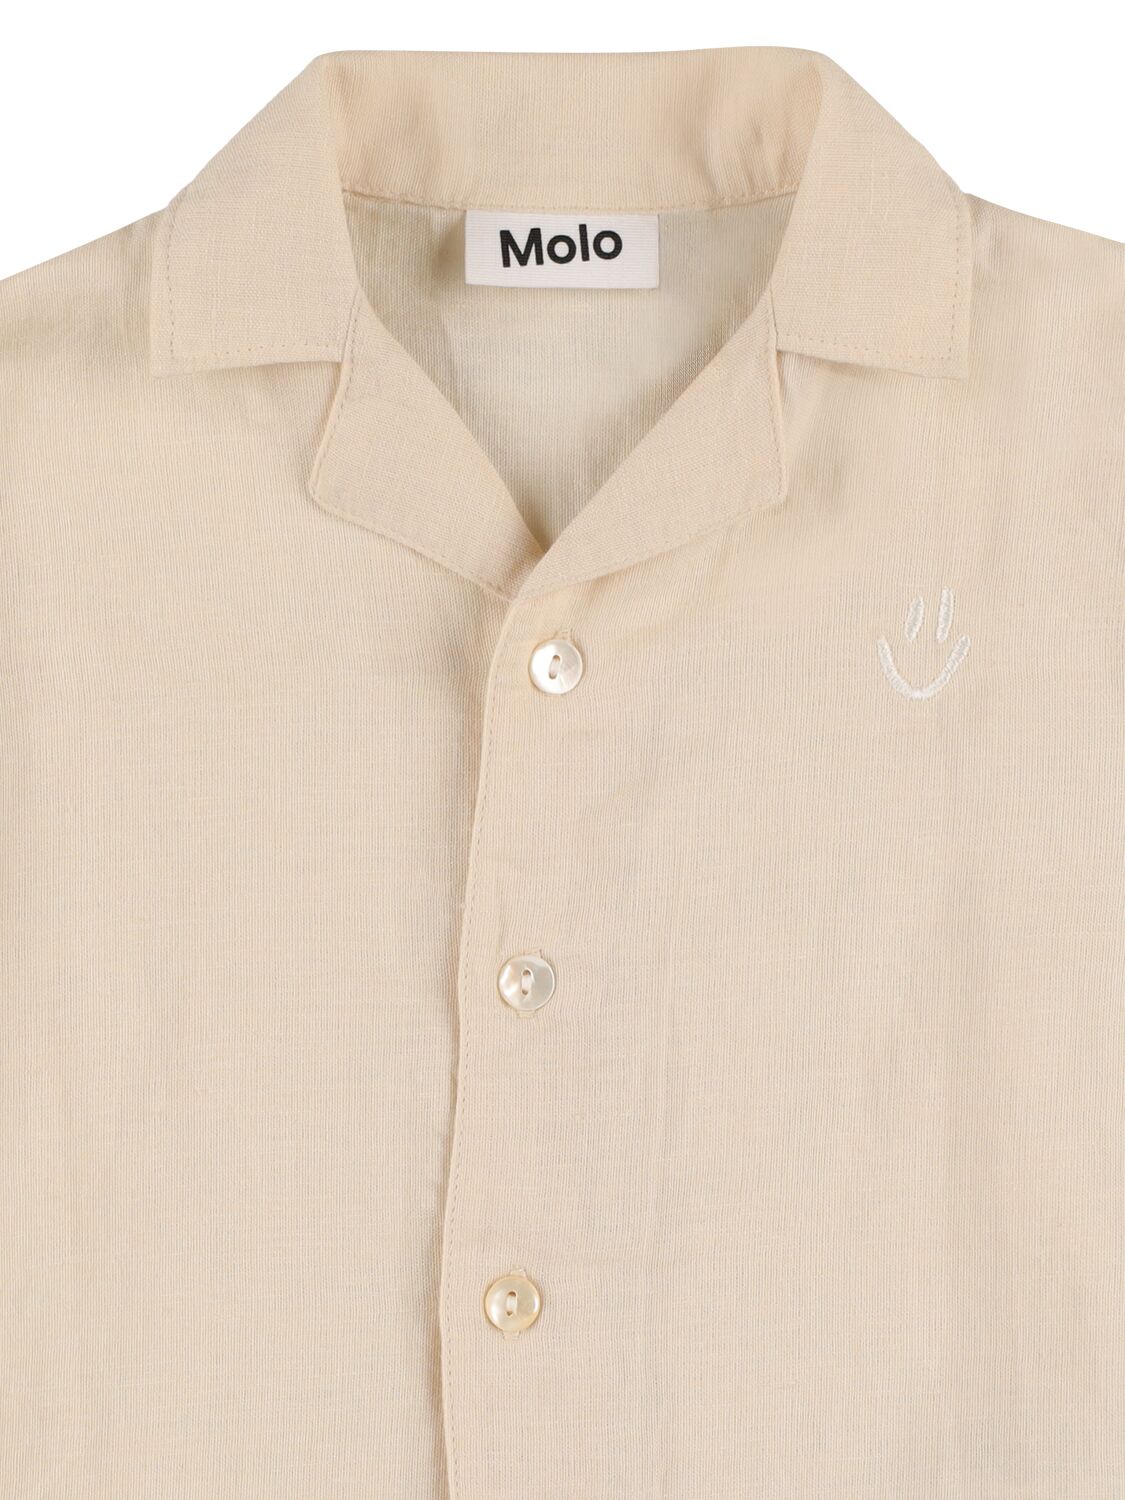 Shop Molo Cotton & Linen Short Sleeve Shirt In Light Beige